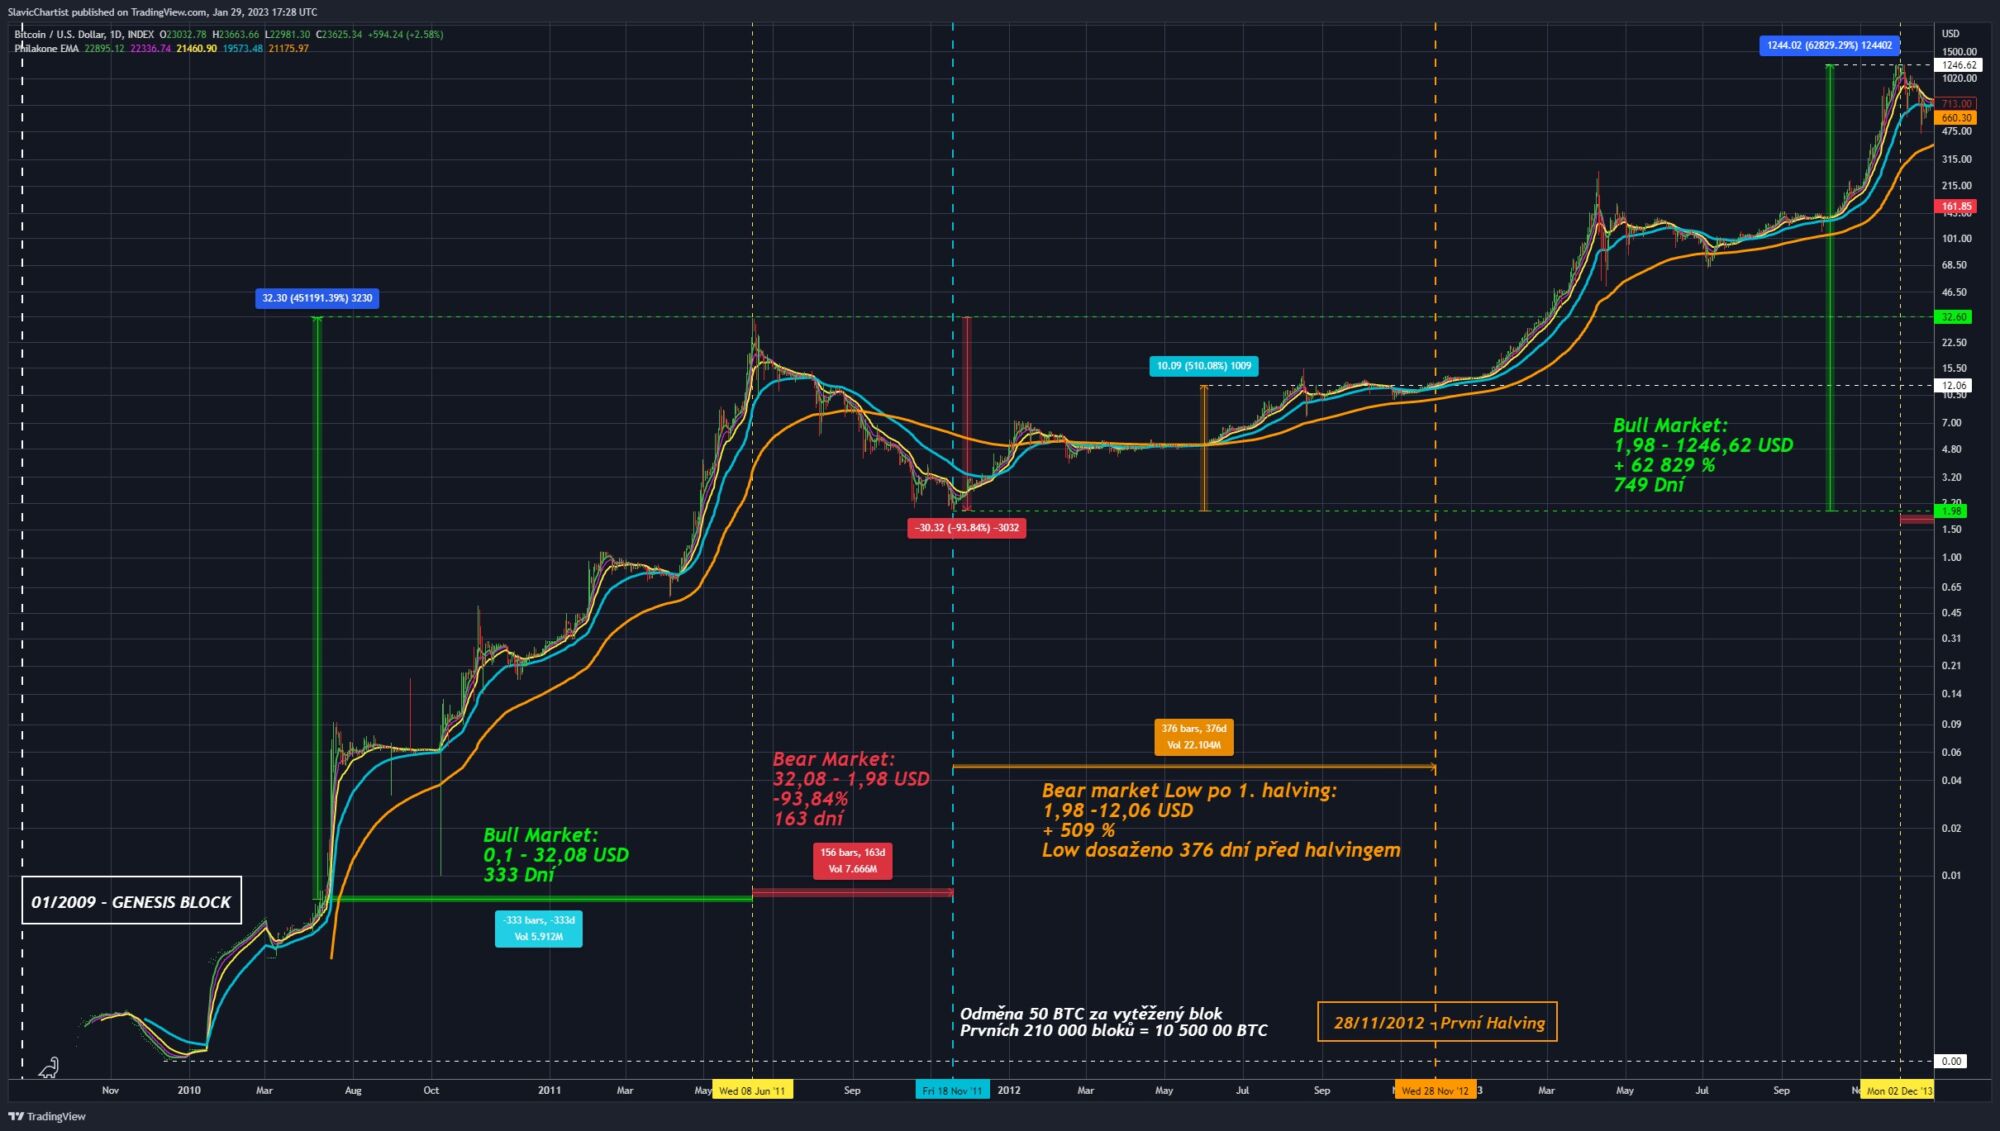 Technická analýza vývoje ceny Bitcoinu po jeho vzniku po první Bitcoin halving.
